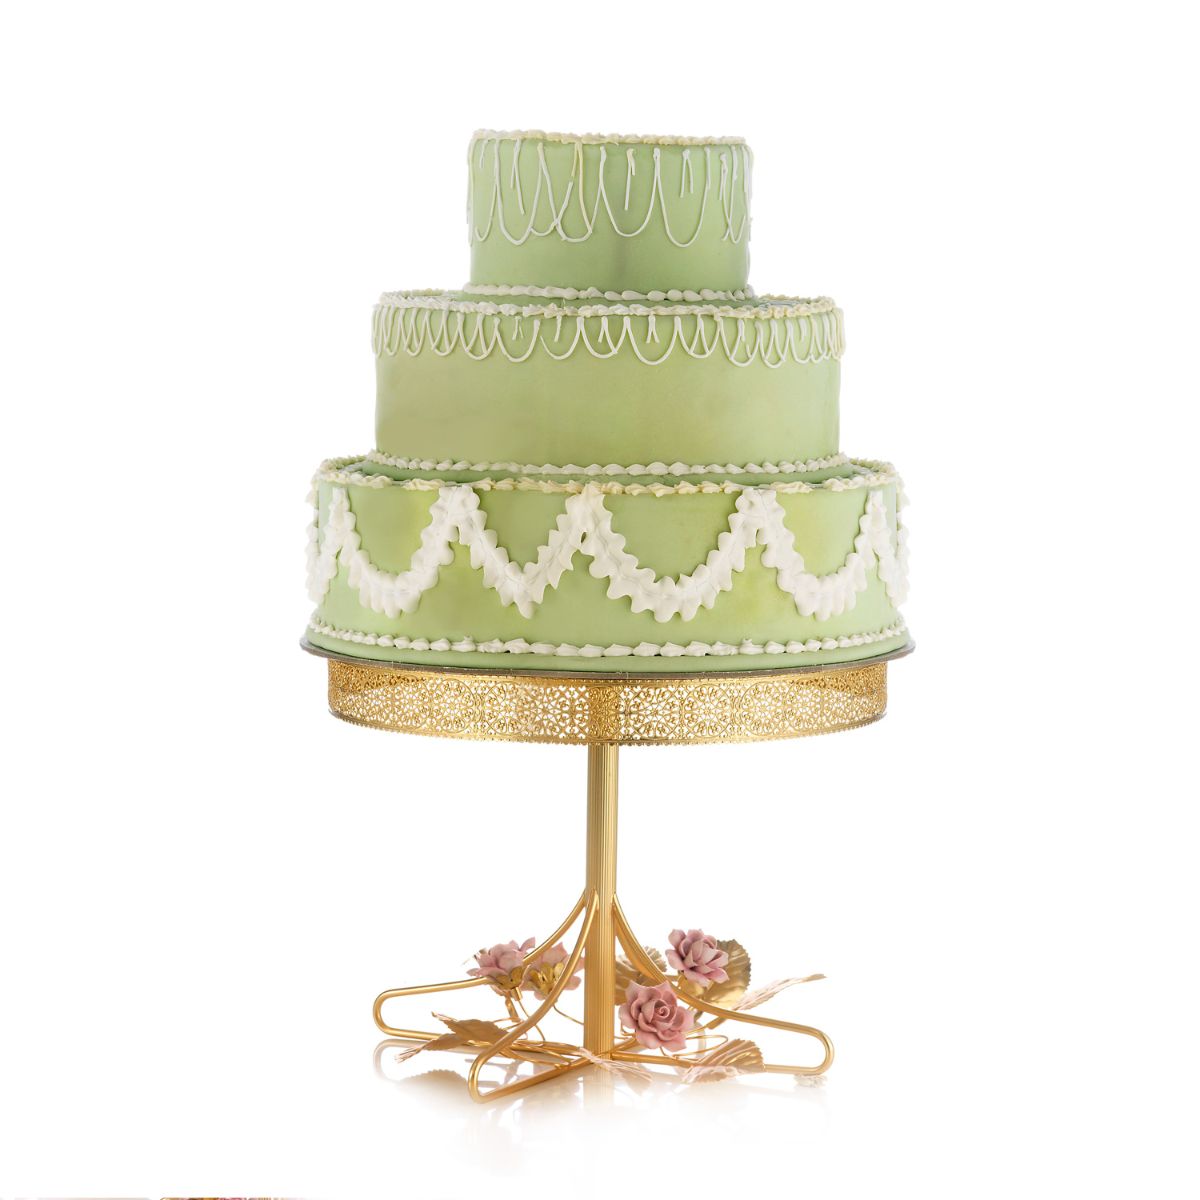 Taormina Multicolor & Gold Small Cake Stand VILLARI